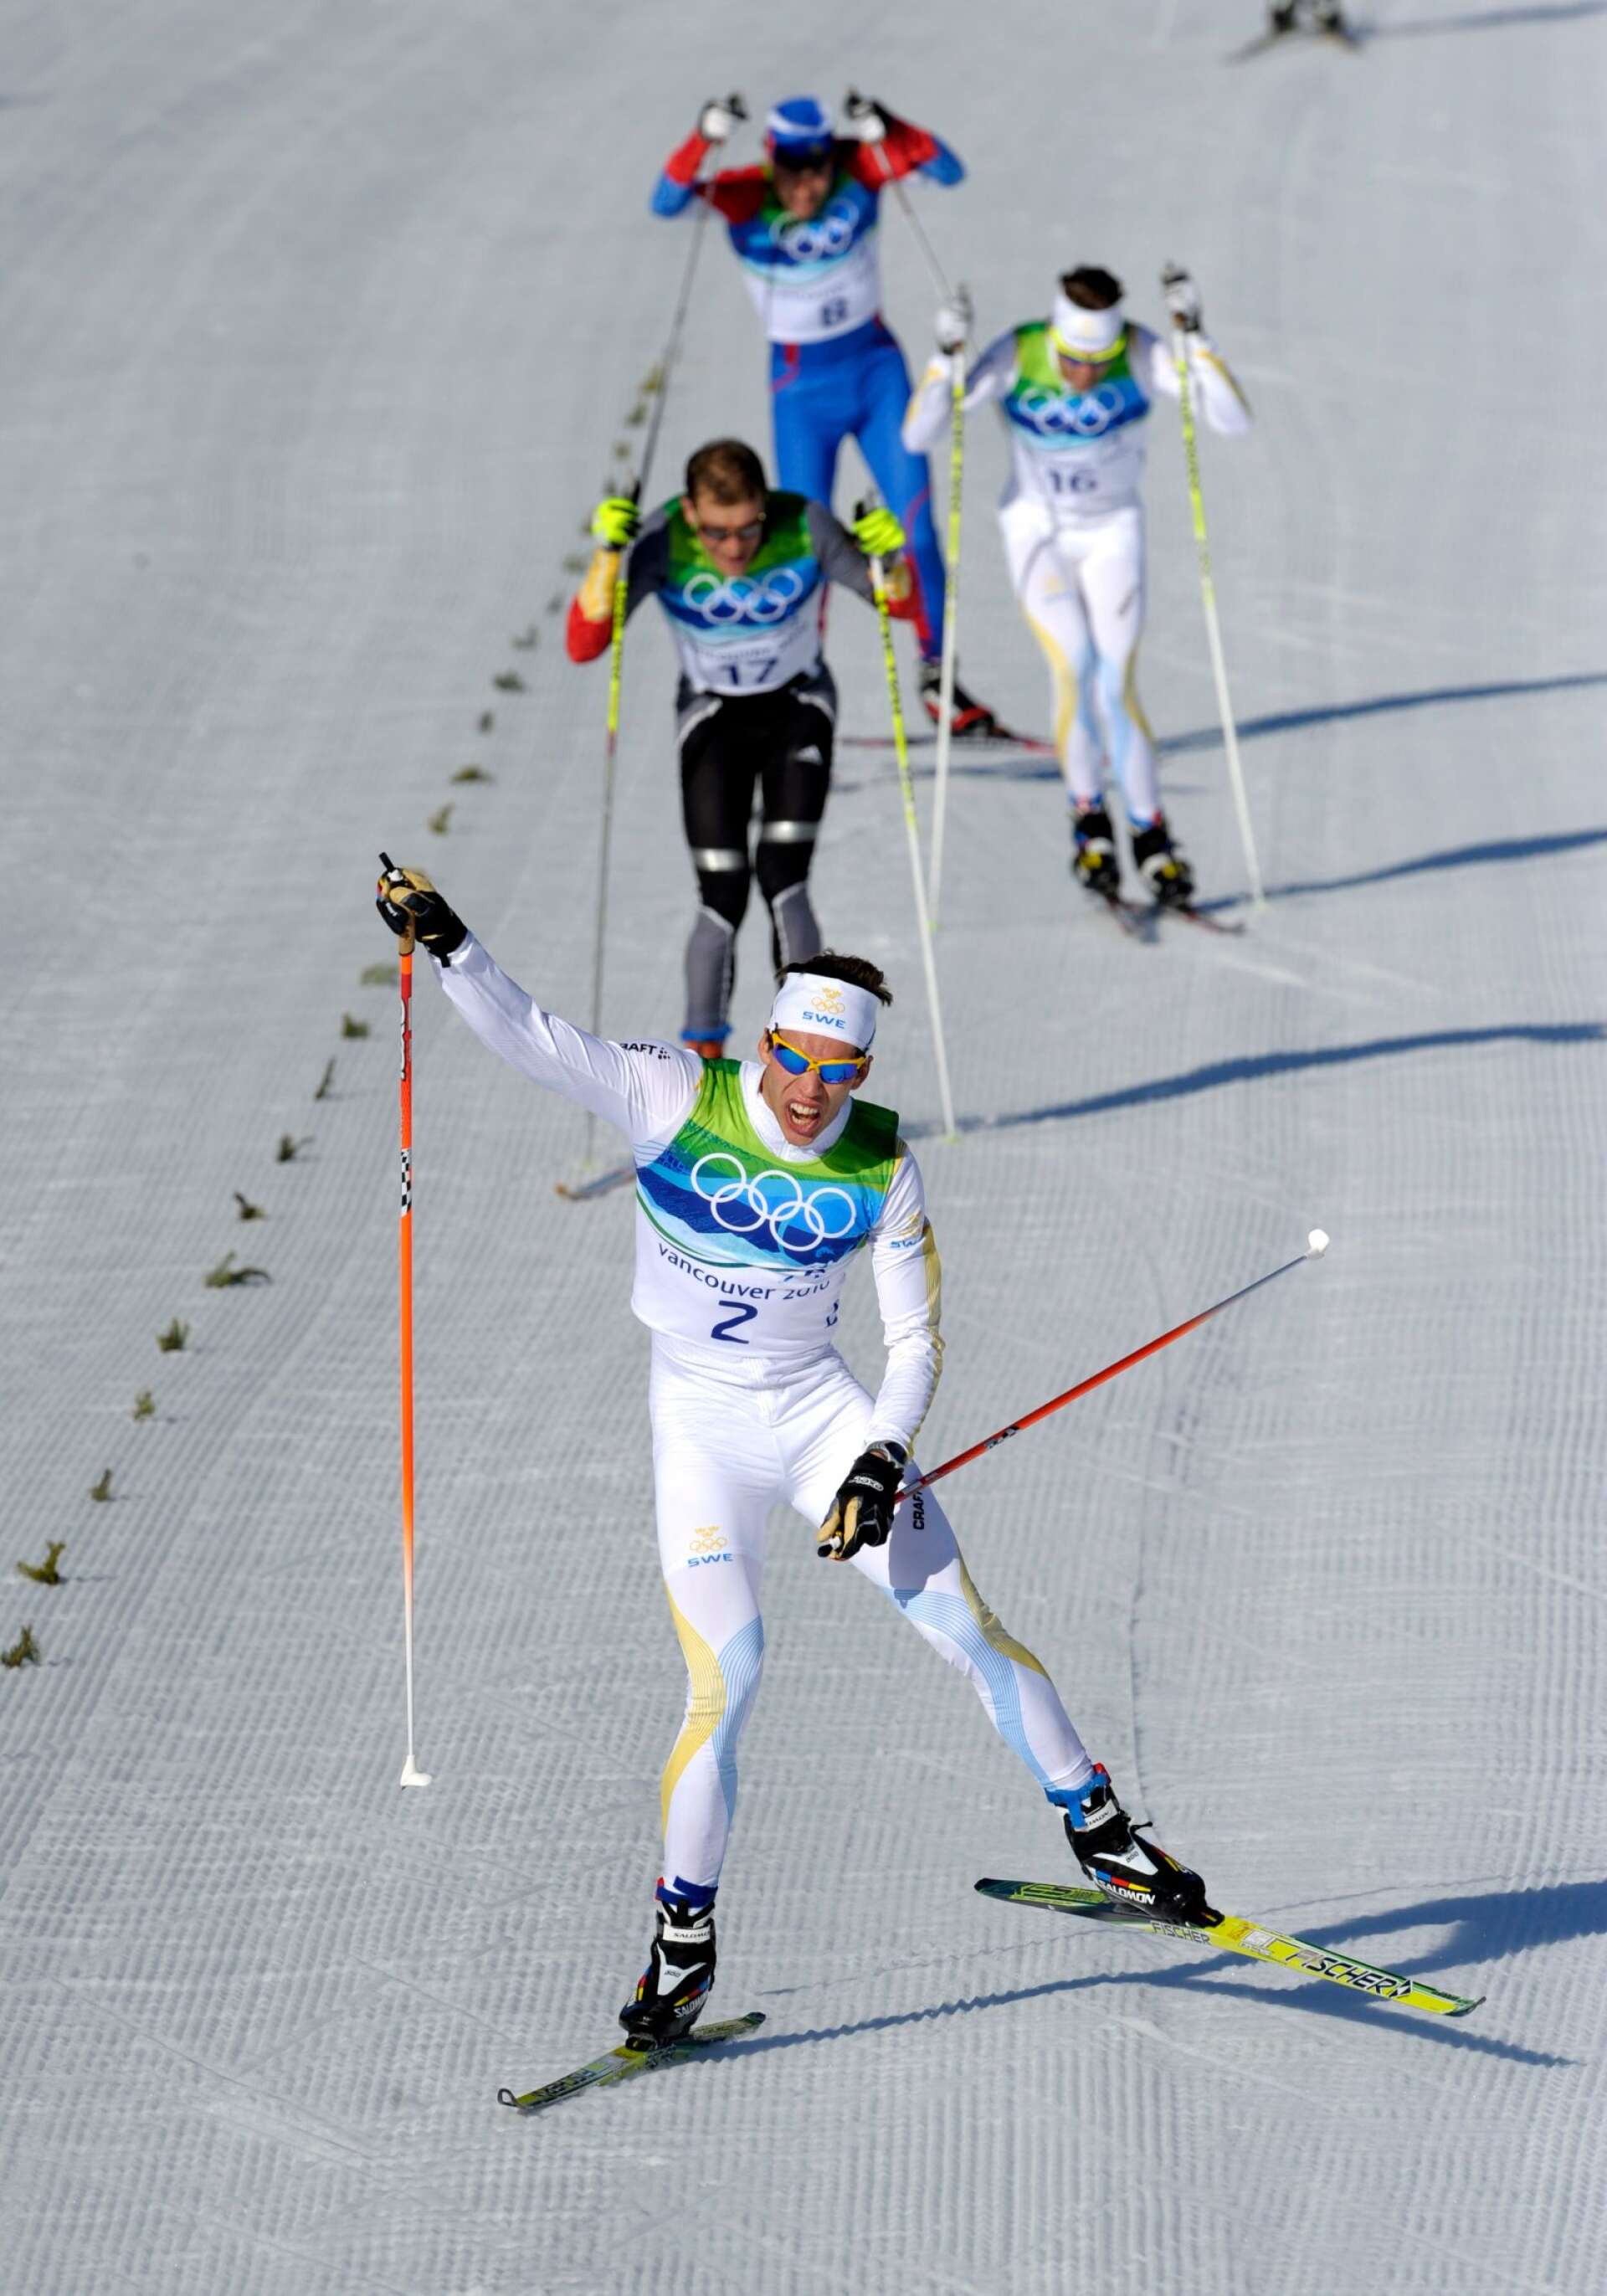 Marcus Hellner skejtar mot OS-guld på herrarnas 30 kilometer skiathlon under spelen i Vancouver 2010. Där bakom kniper också Johan Olsson en bronspeng. Mellan svenskarna slutade tysken Tobias Angerer.